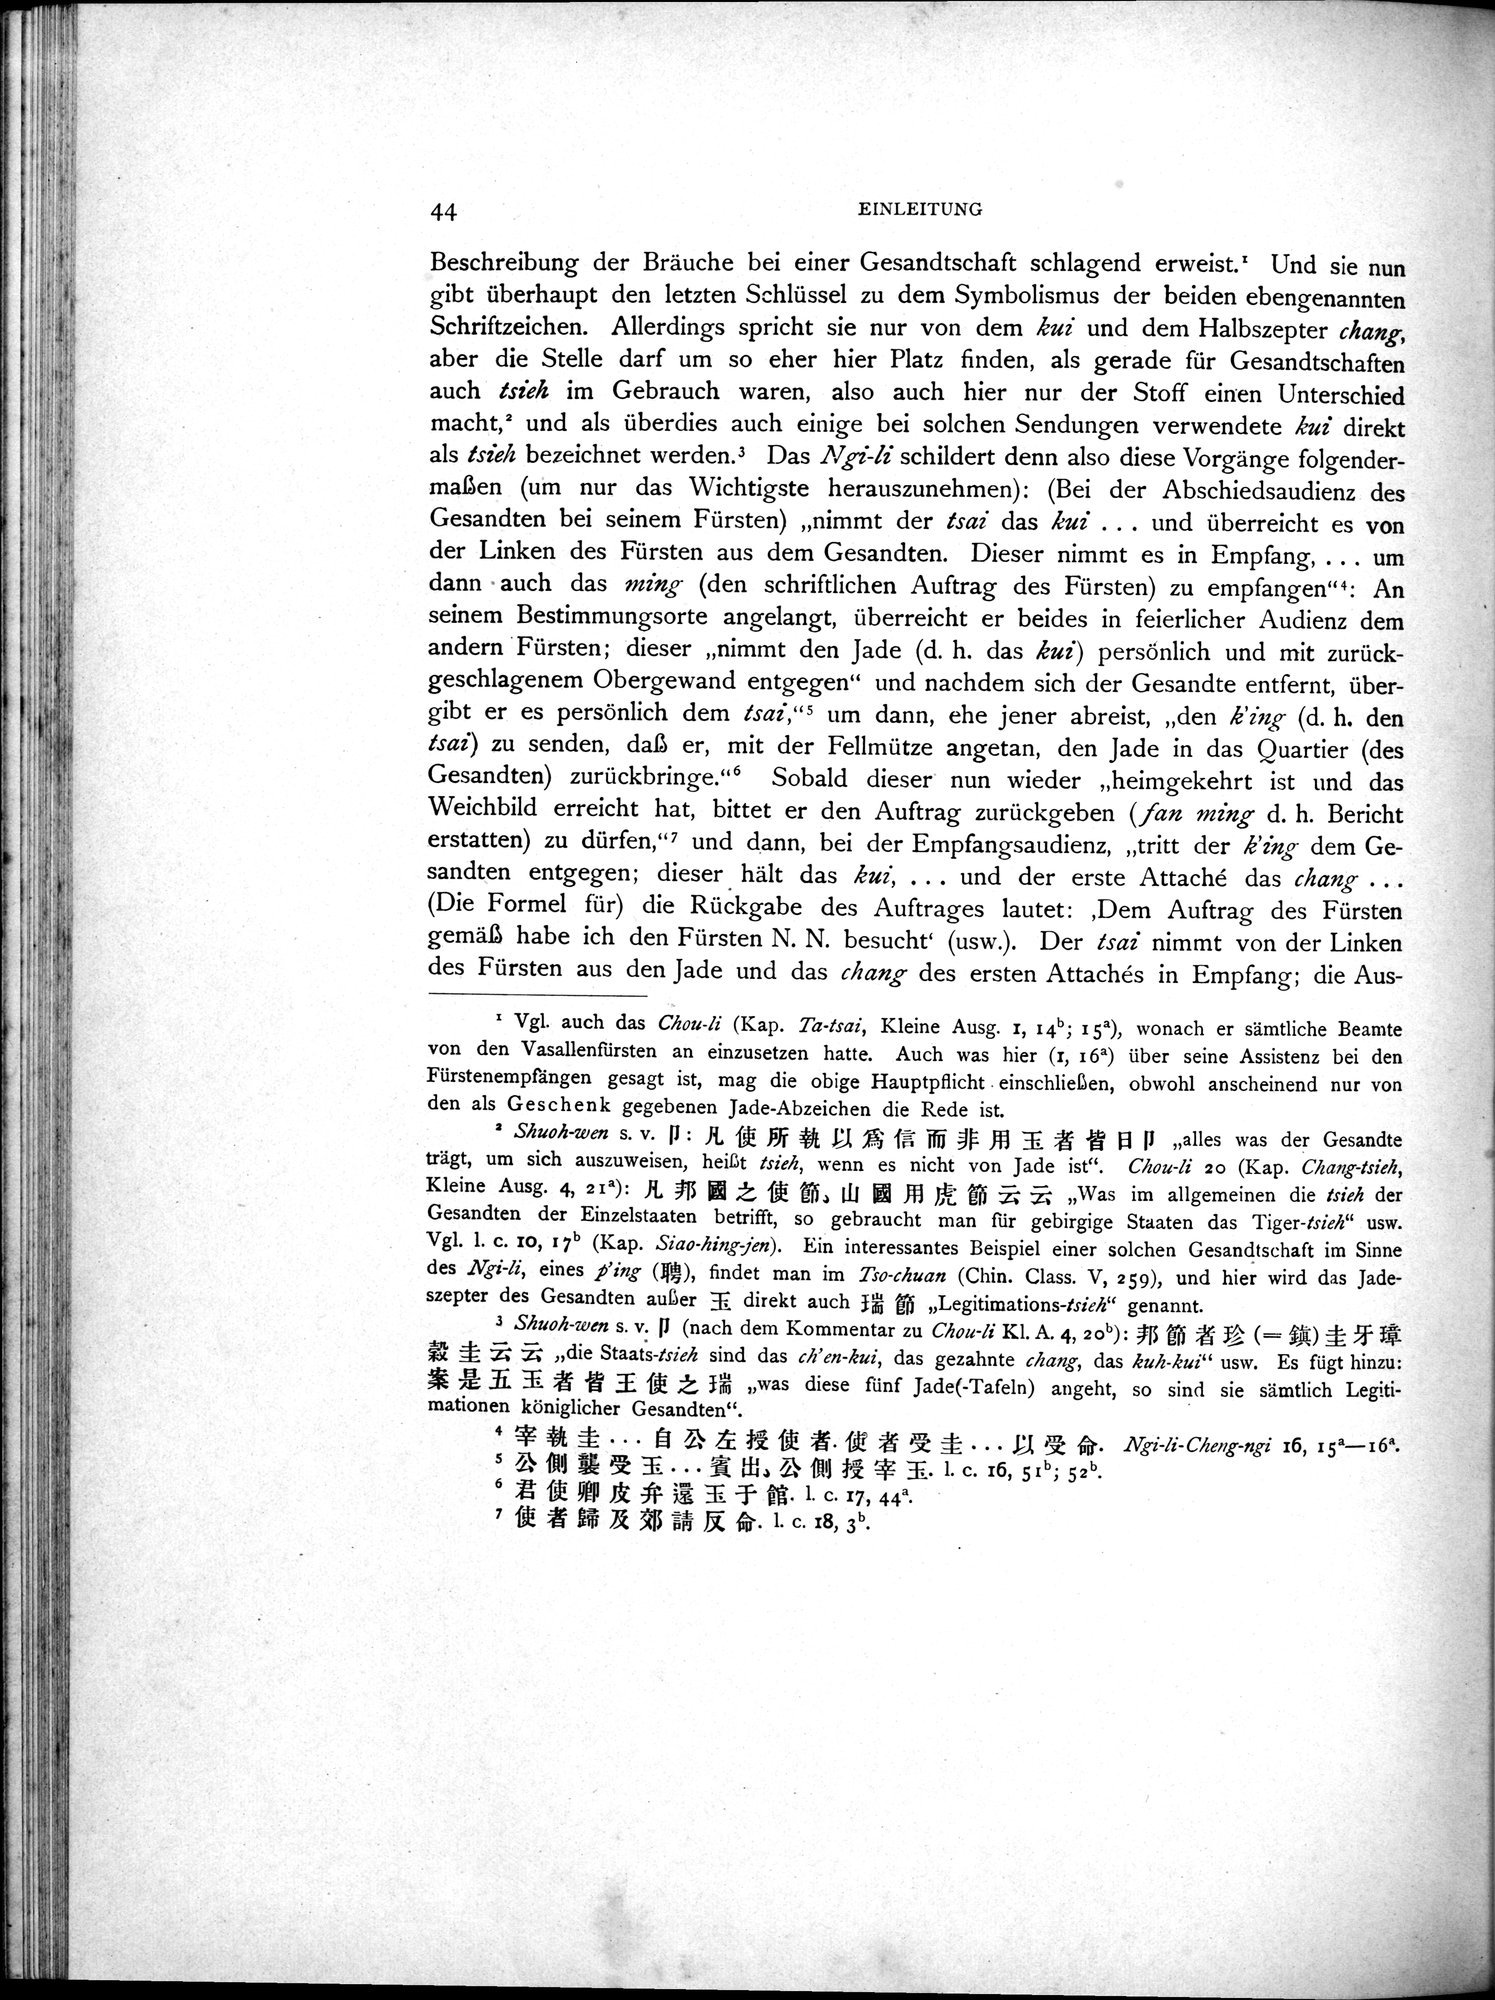 Die Chinesischen Handschriften- und sonstigen Kleinfunde Sven Hedins in Lou-lan : vol.1 / Page 68 (Grayscale High Resolution Image)